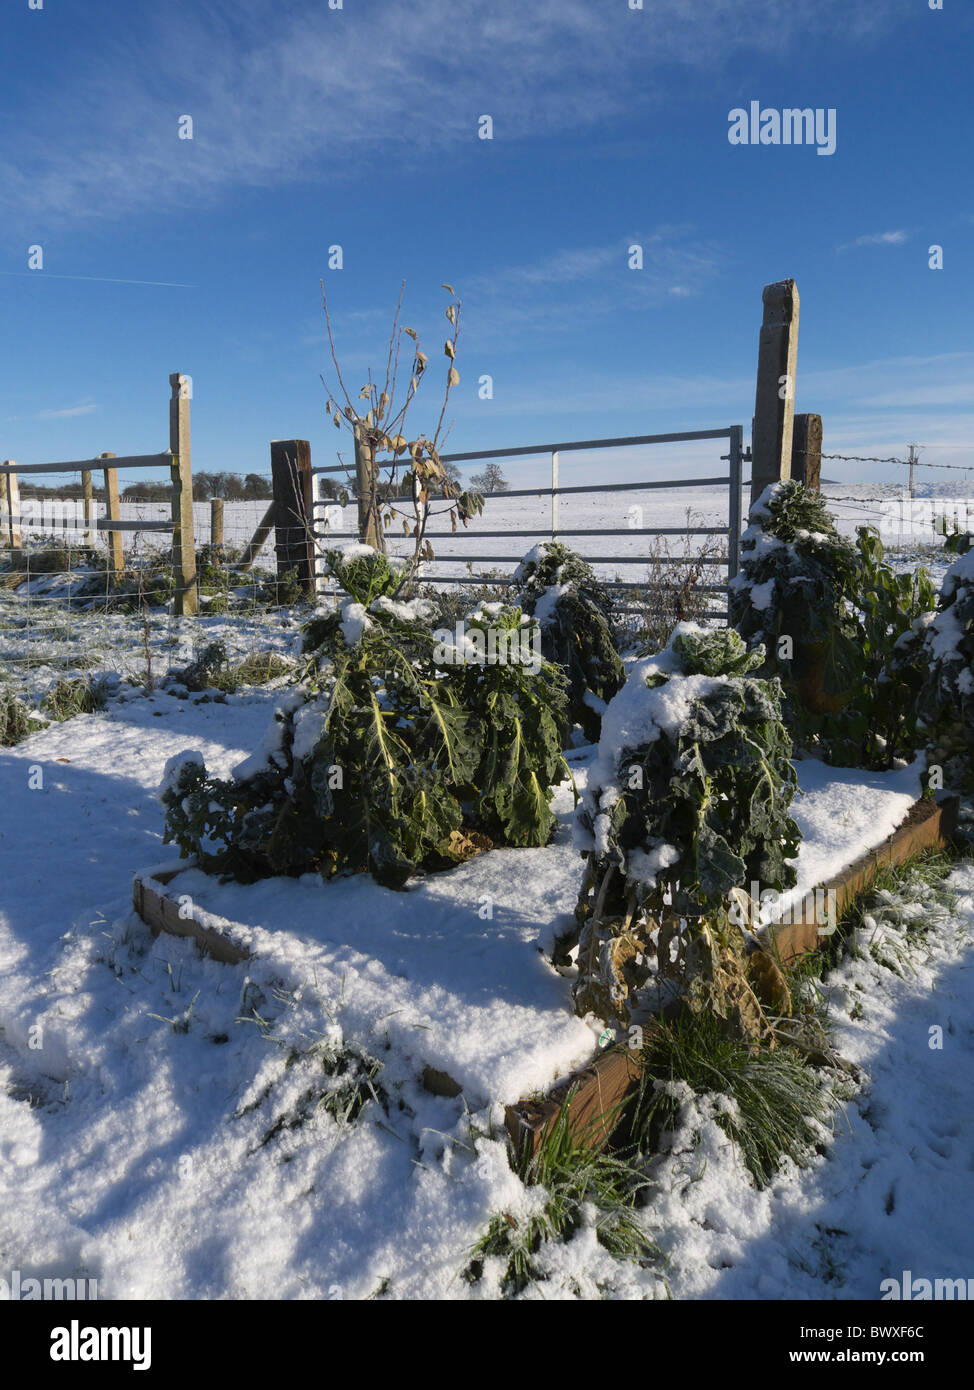 Un lit de légumes couverts de neige. Lincolnshire, Angleterre. Banque D'Images